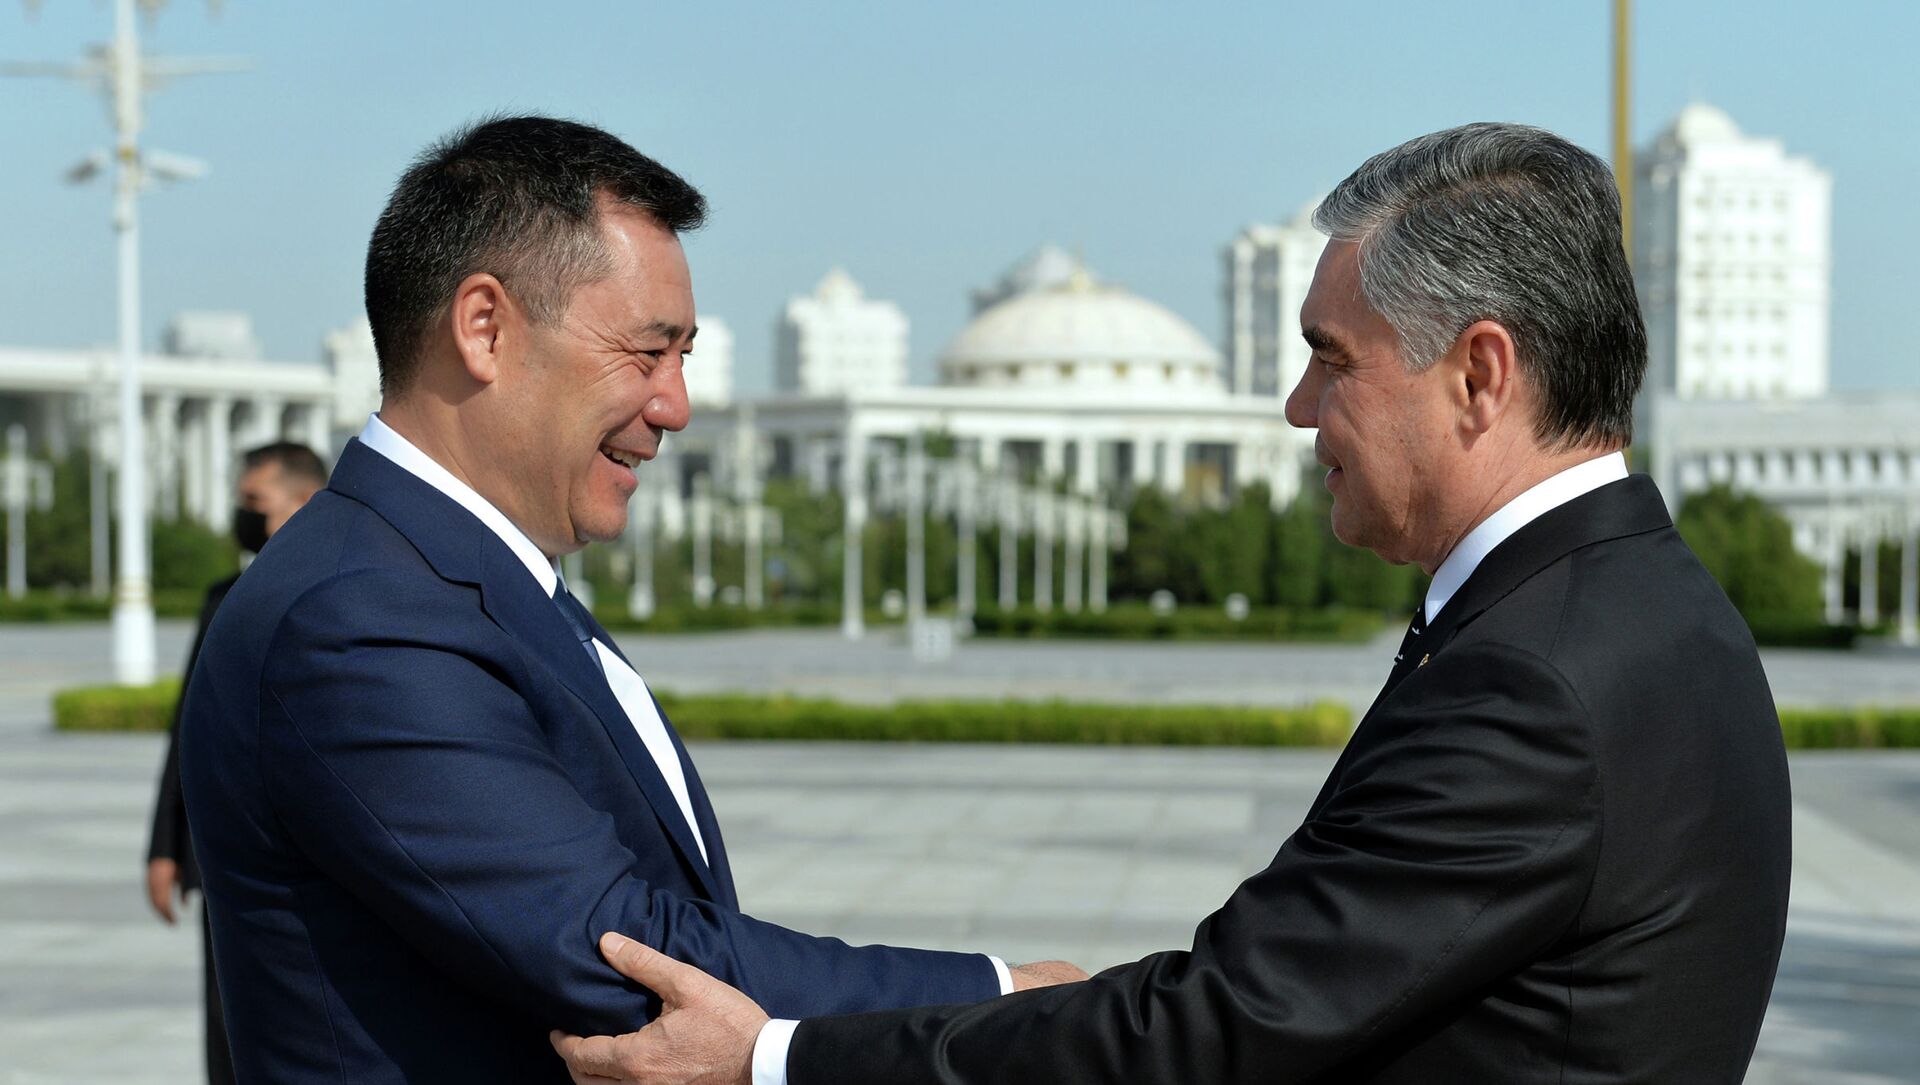 Церемония официальной встречи президента Садыра Жапарова с президентом Туркменистана Гурбангулы Бердымухамедовым в Ашхабаде. 28 июня 2021 года - Sputnik Кыргызстан, 1920, 01.07.2021